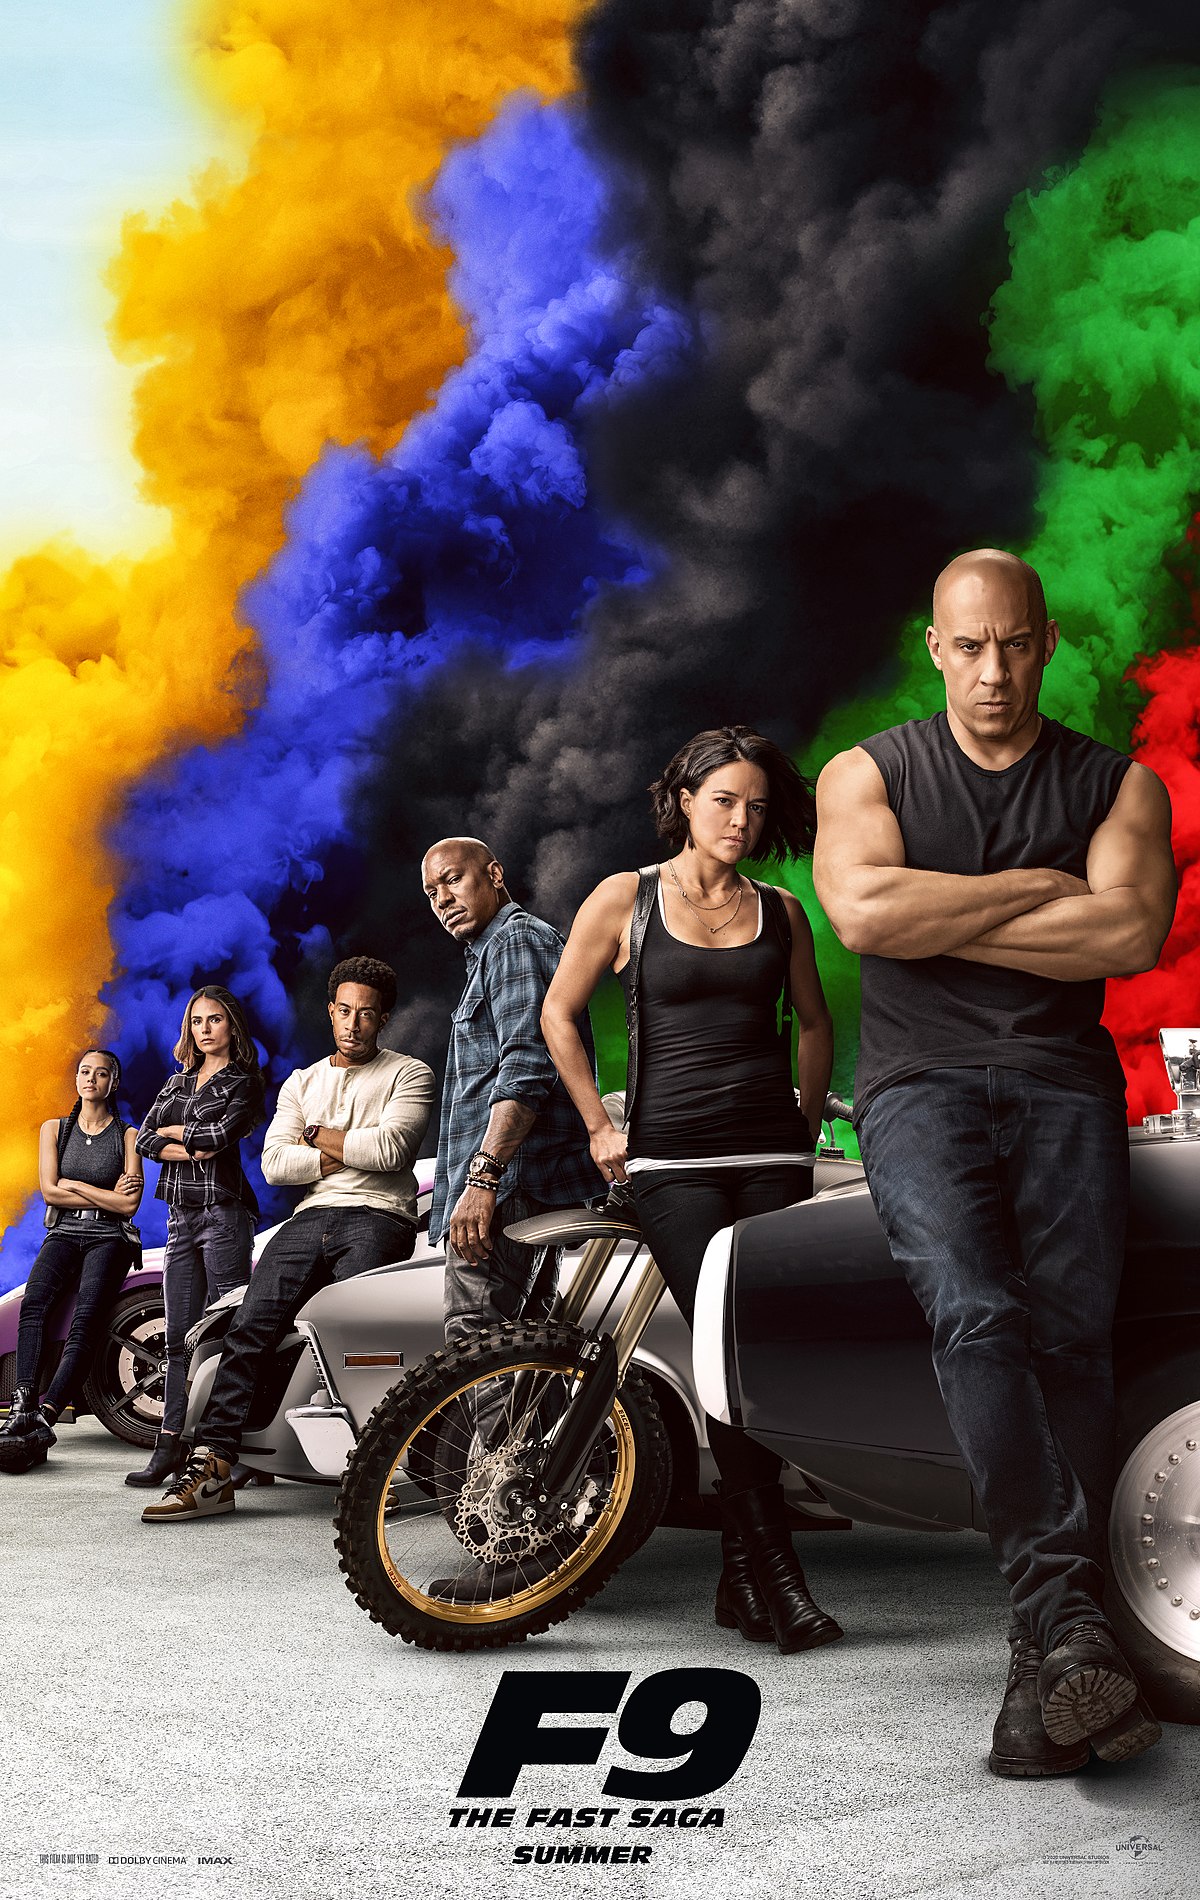 Repelis mp4> Fast & furious 9. La saga Fast & Furious (O N L I N E) Película Completa| de Cine 2020